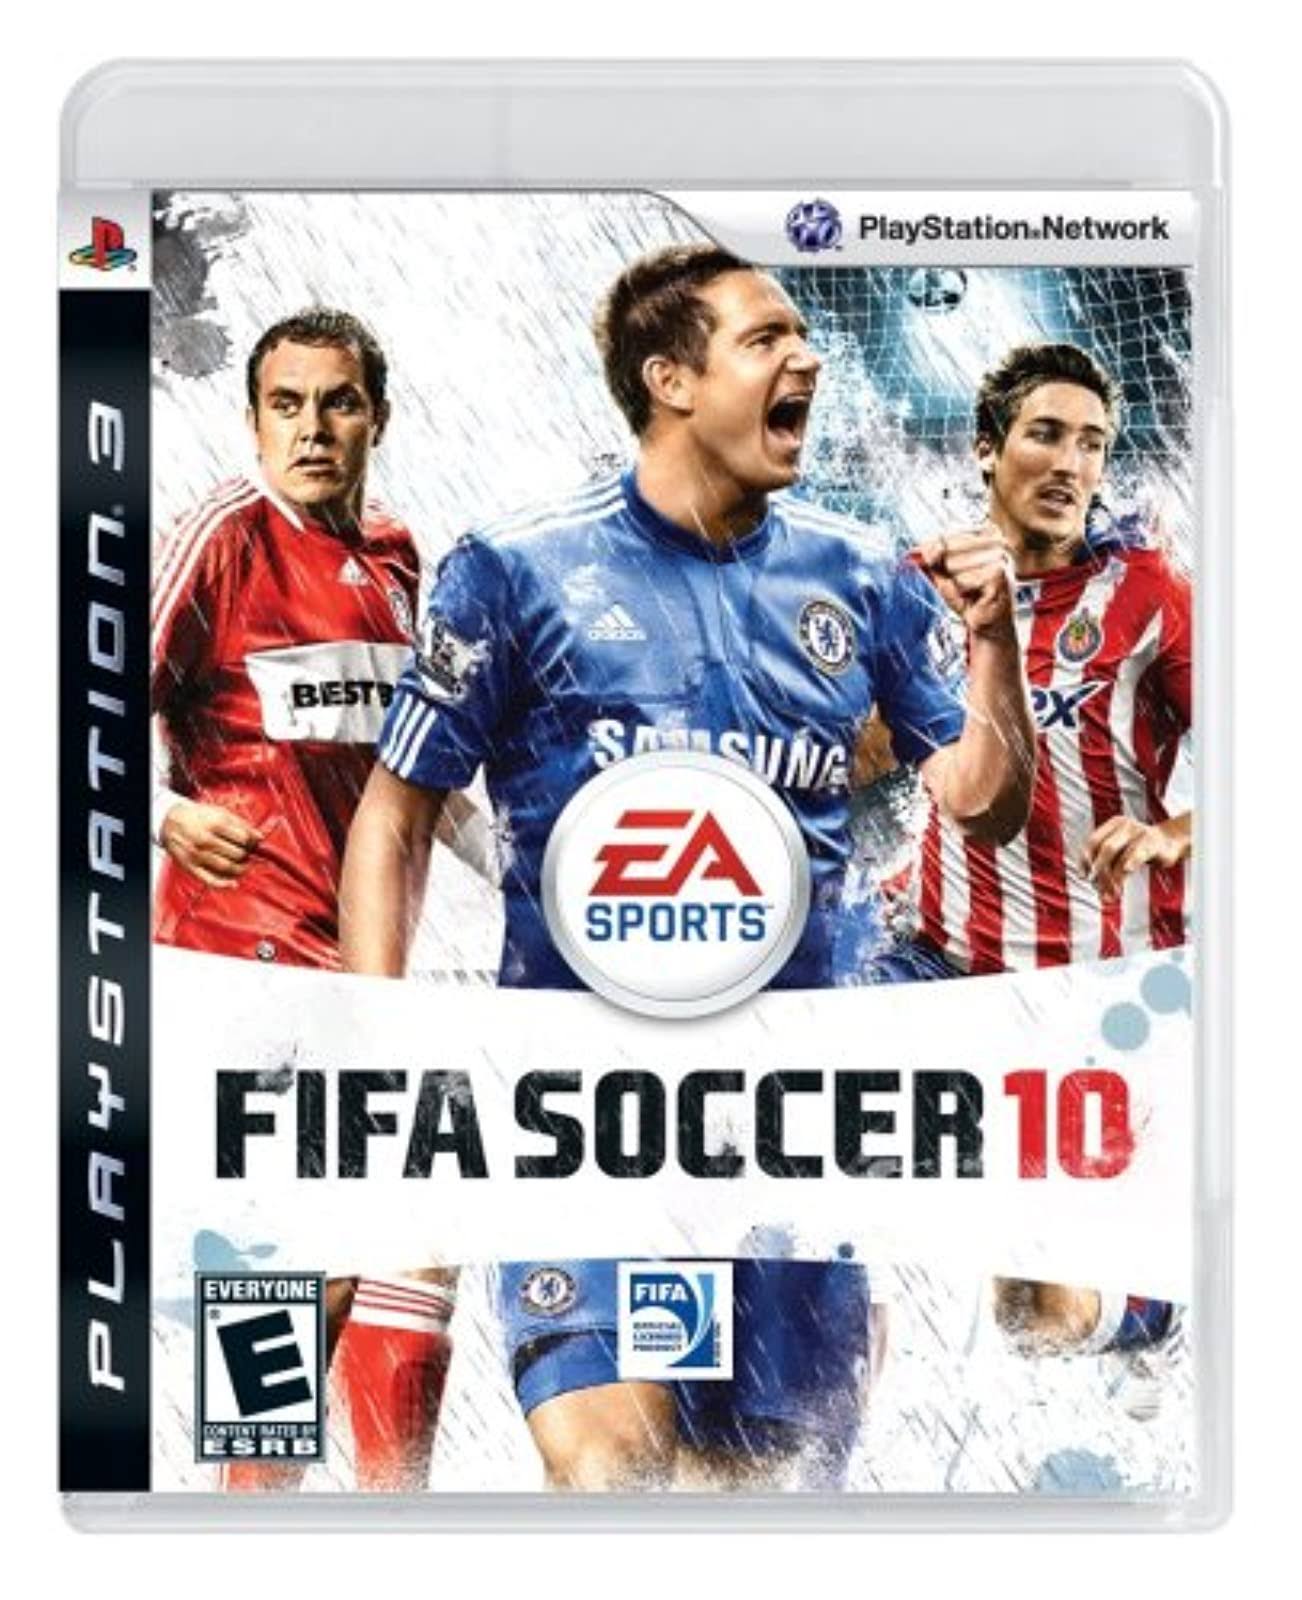 FIFA Soccer 10 - Playstation 3